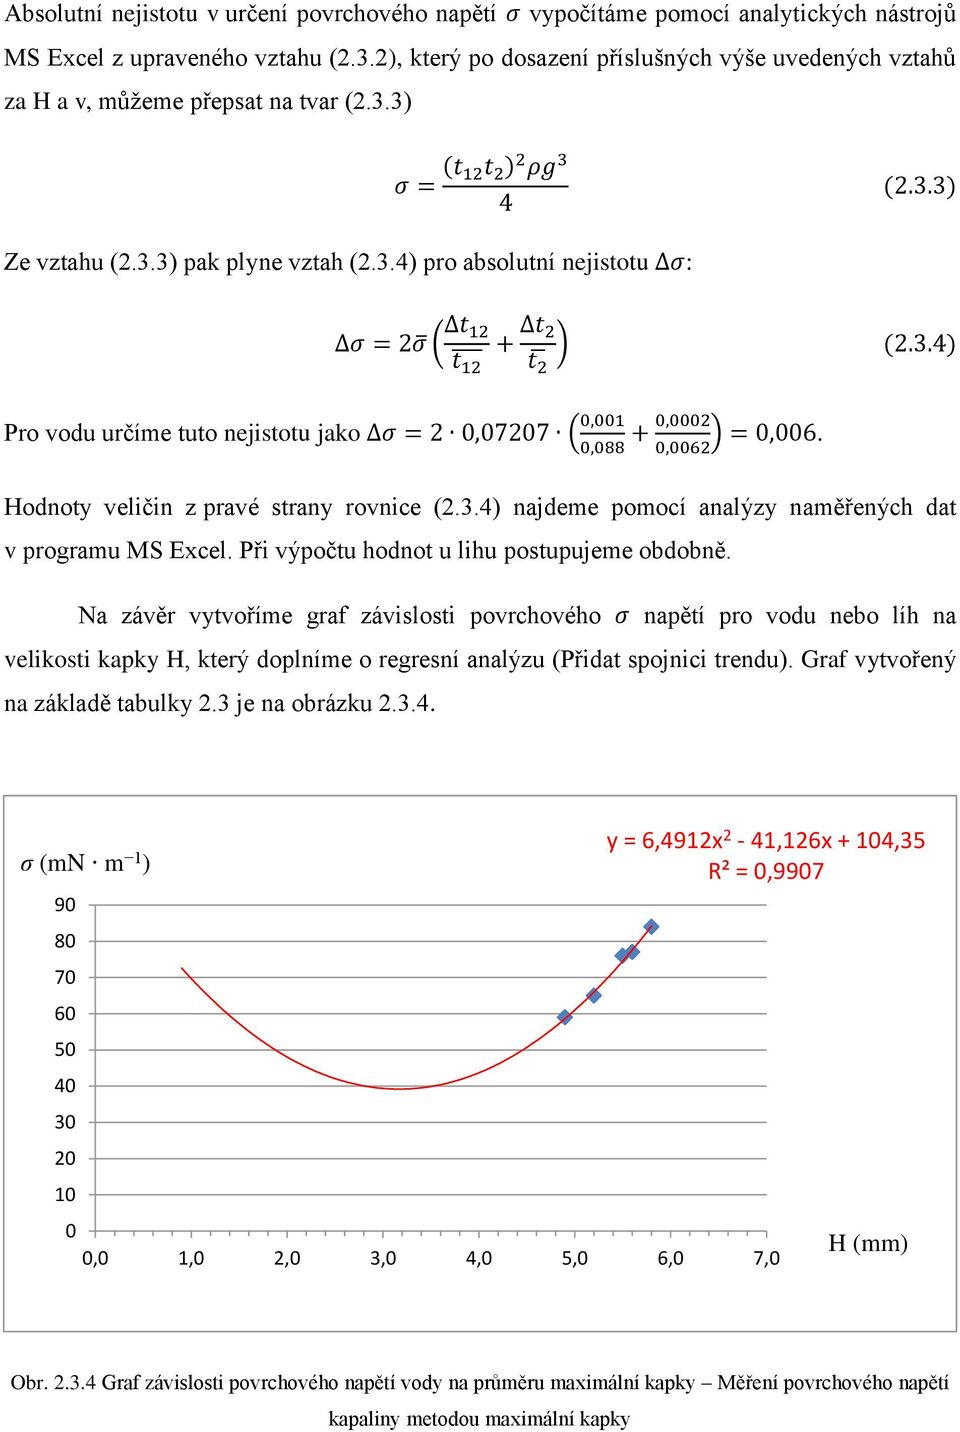 3.4) 2 Pro vodu určíme tuto nejistotu jako σ = 2 0,07207 ( 0,001 0,088 + 0,0002 0,0062 ) = 0,006. Hodnoty veličin z pravé strany rovnice (2.3.4) najdeme pomocí analýzy naměřených dat v programu MS Excel.